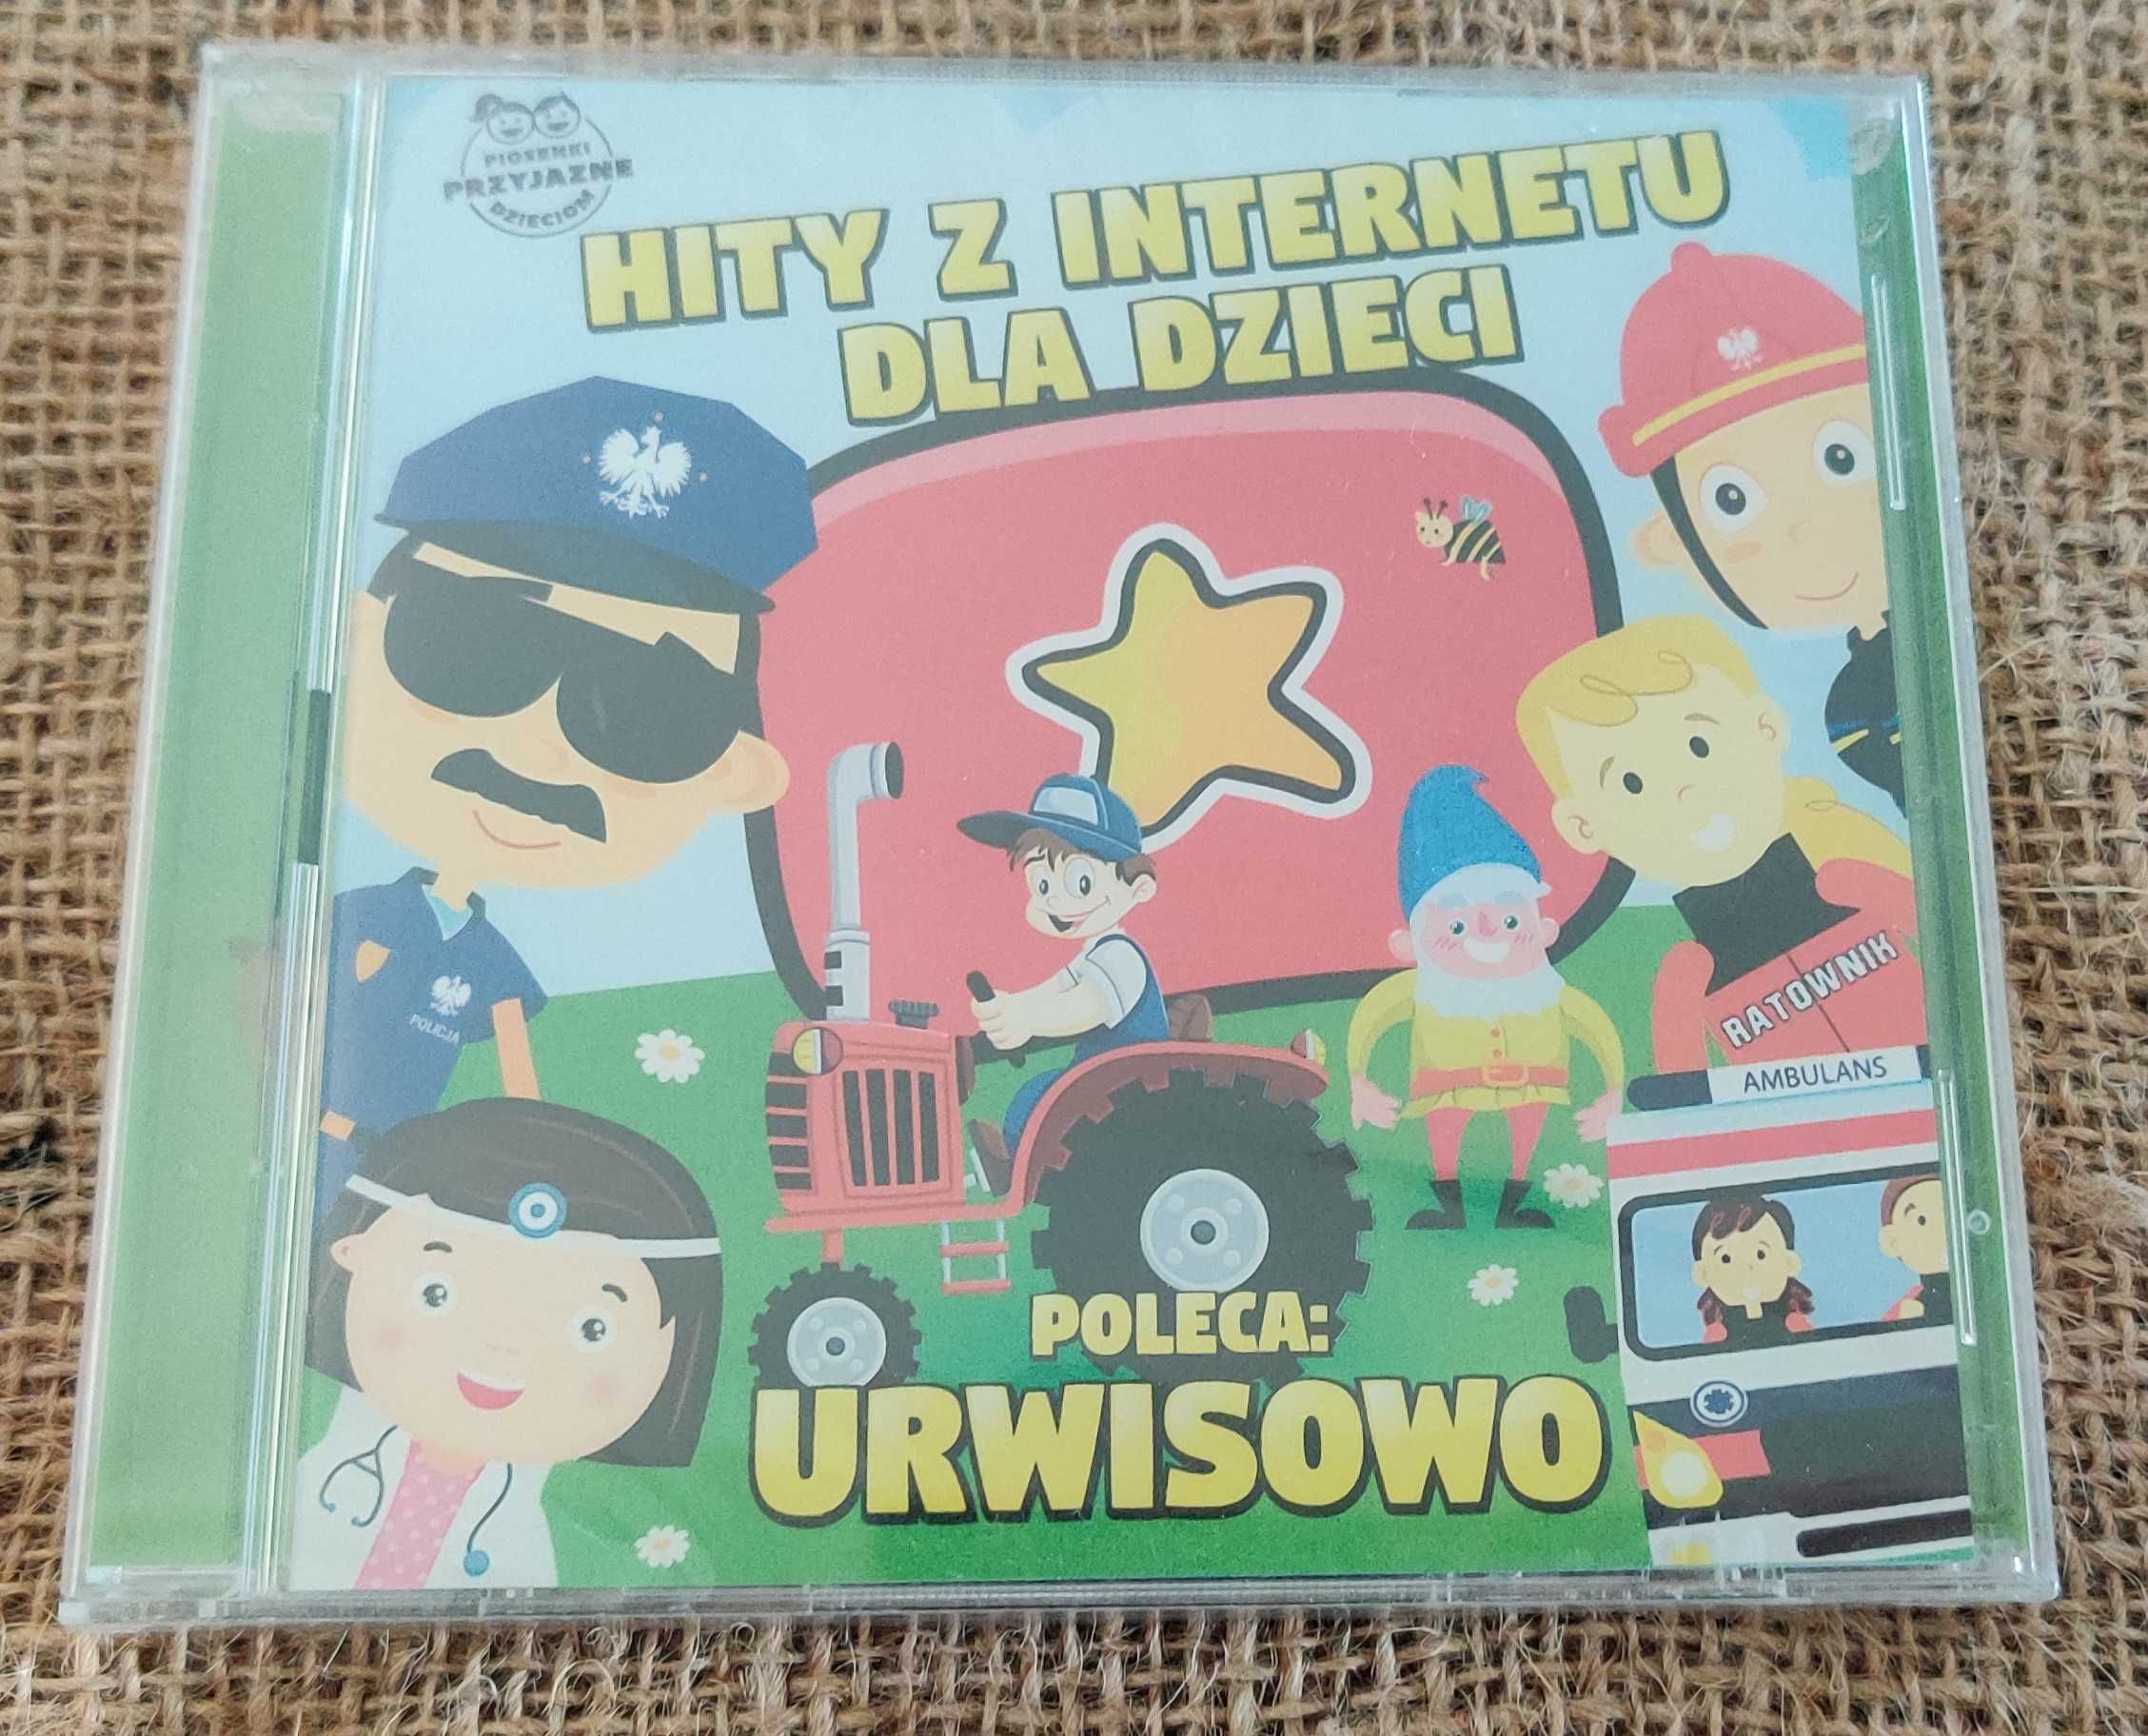 Urwisowo - Hity z internetu dla dzieci, nowa płyta CD